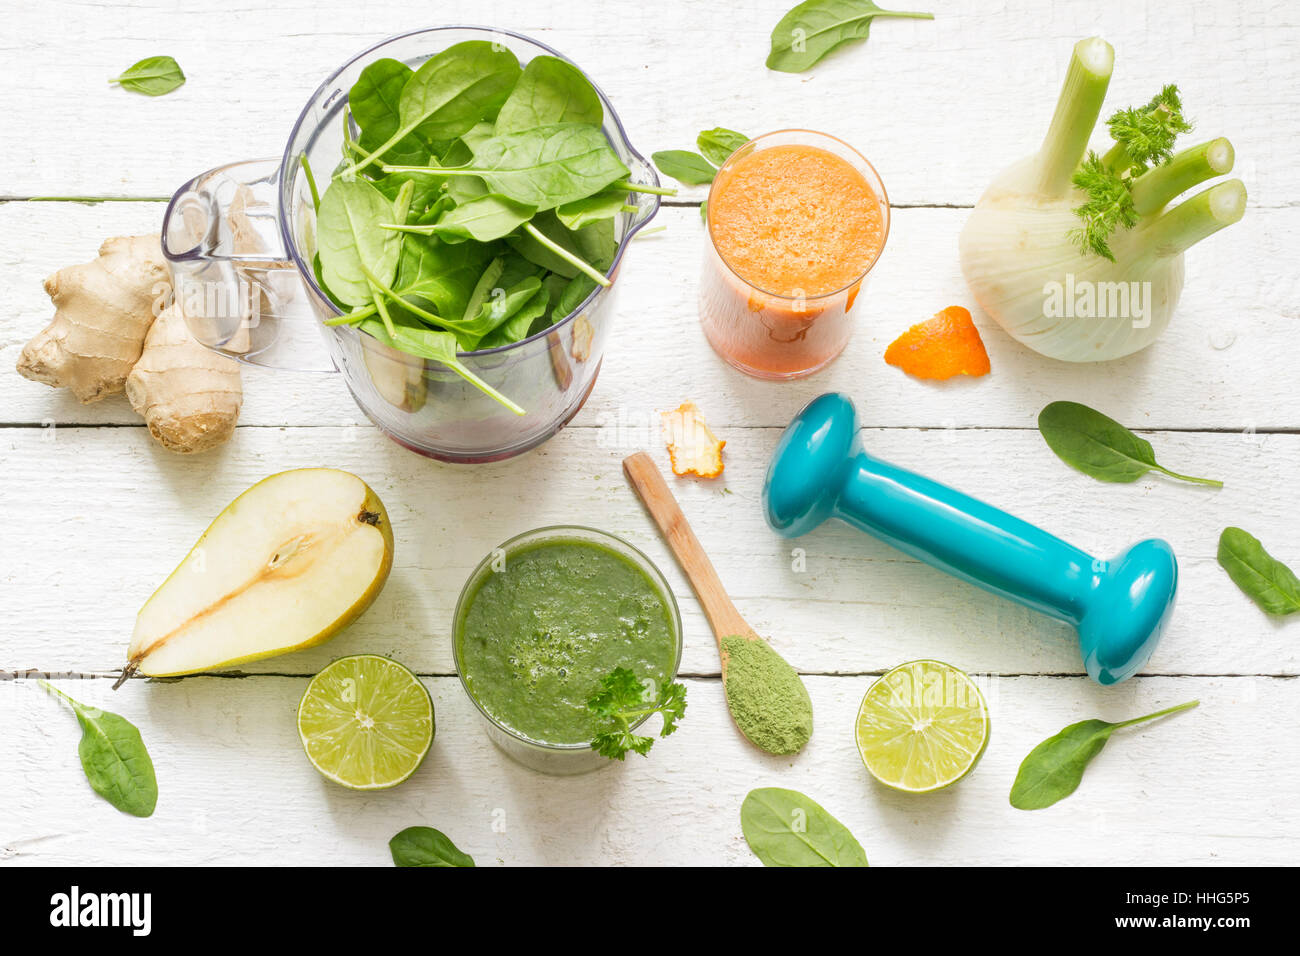 Obst, Gemüse, Smoothie, Mixer, abstrakte Gesundheit-Ernährung-Lifestyle-Konzept Stockfoto